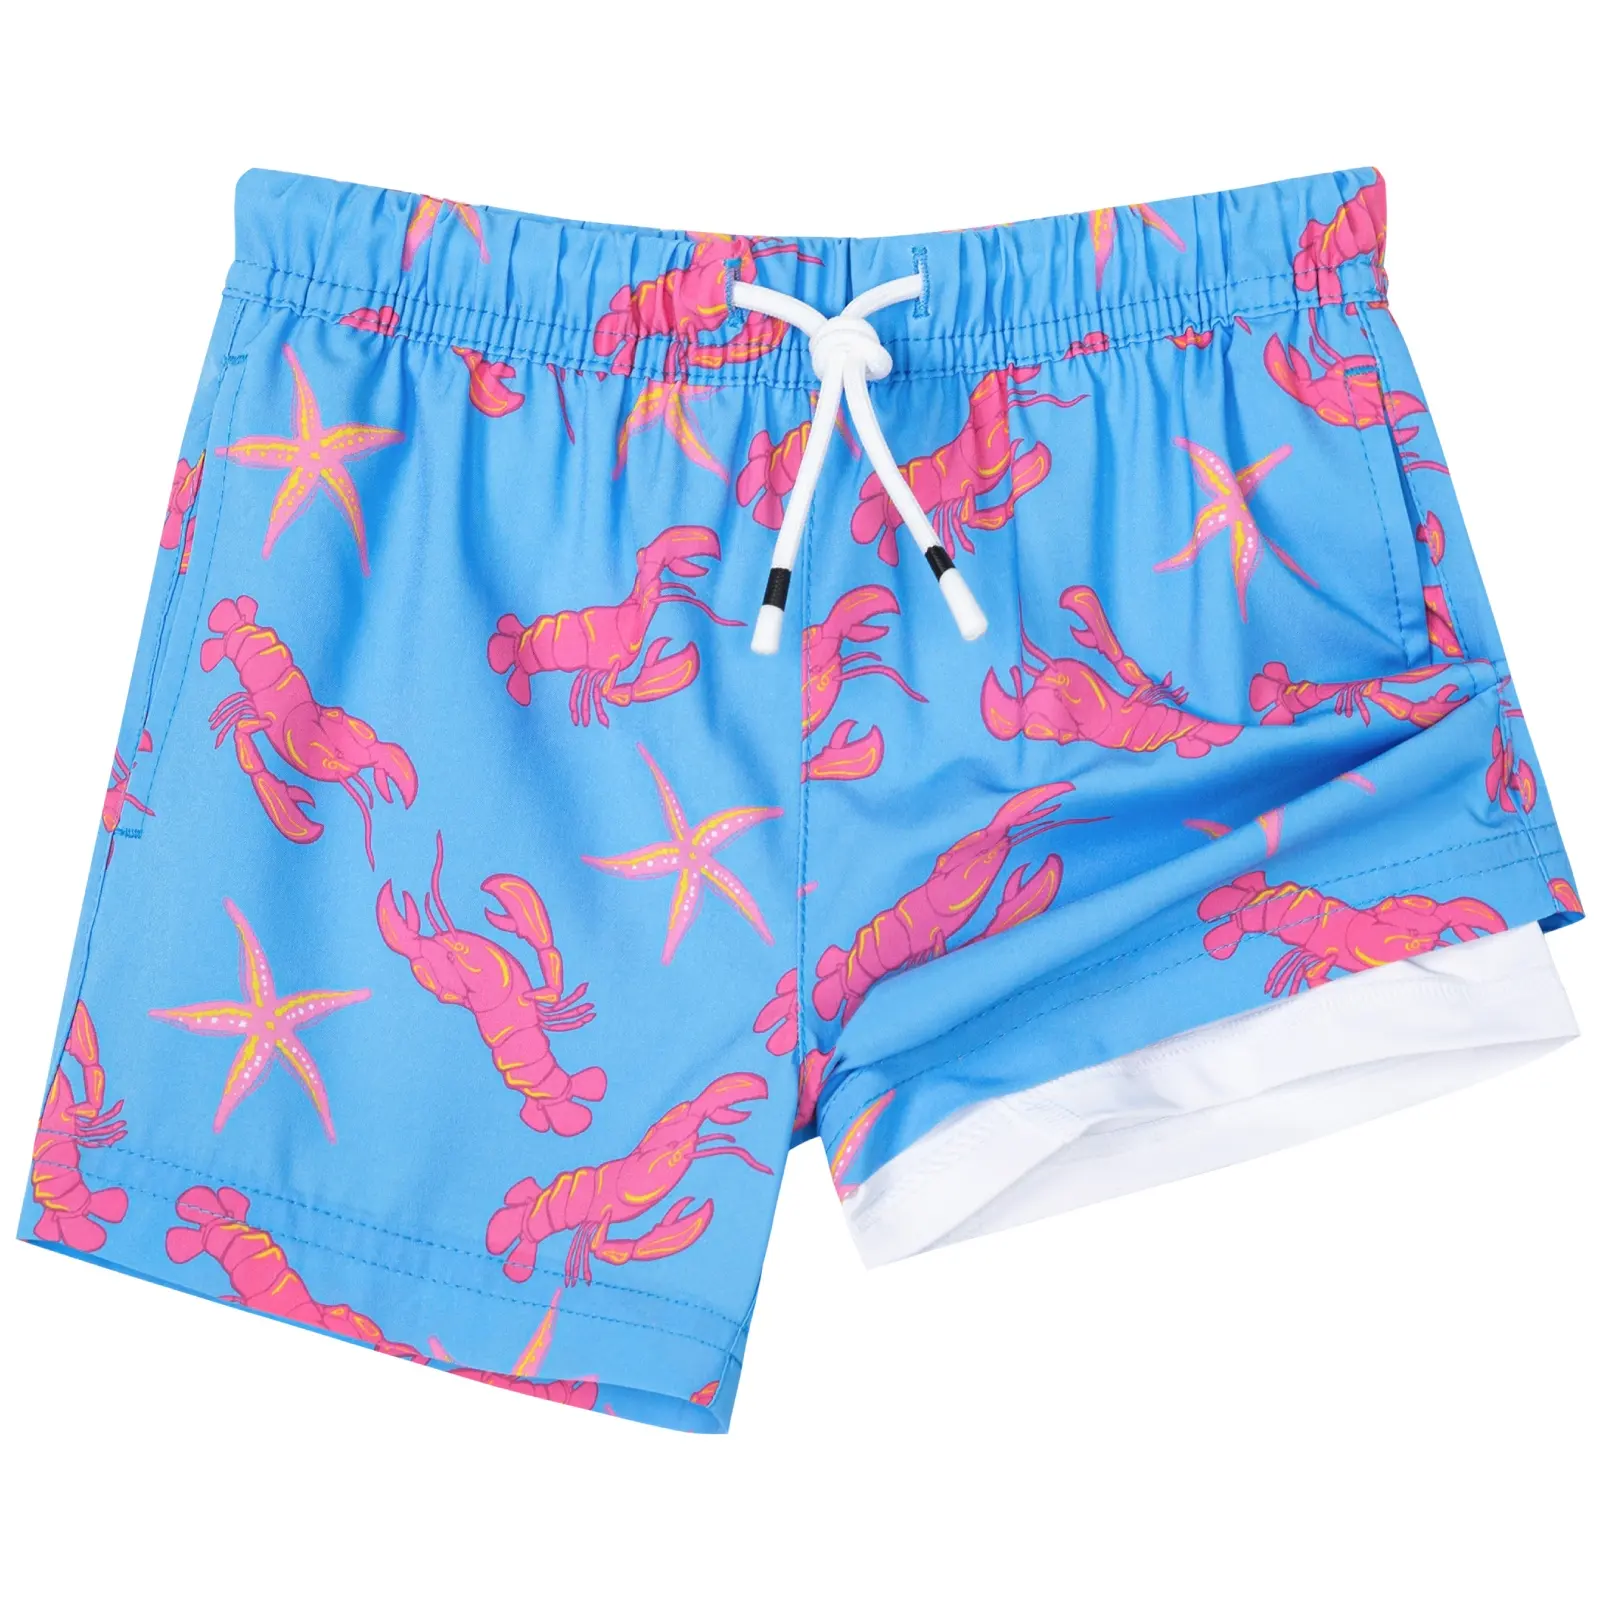 Personalizado Mens criança Natação Troncos com Compressão Liner 2 em 1 Quick Dry Praia Shorts com bolsos Swim Trunks